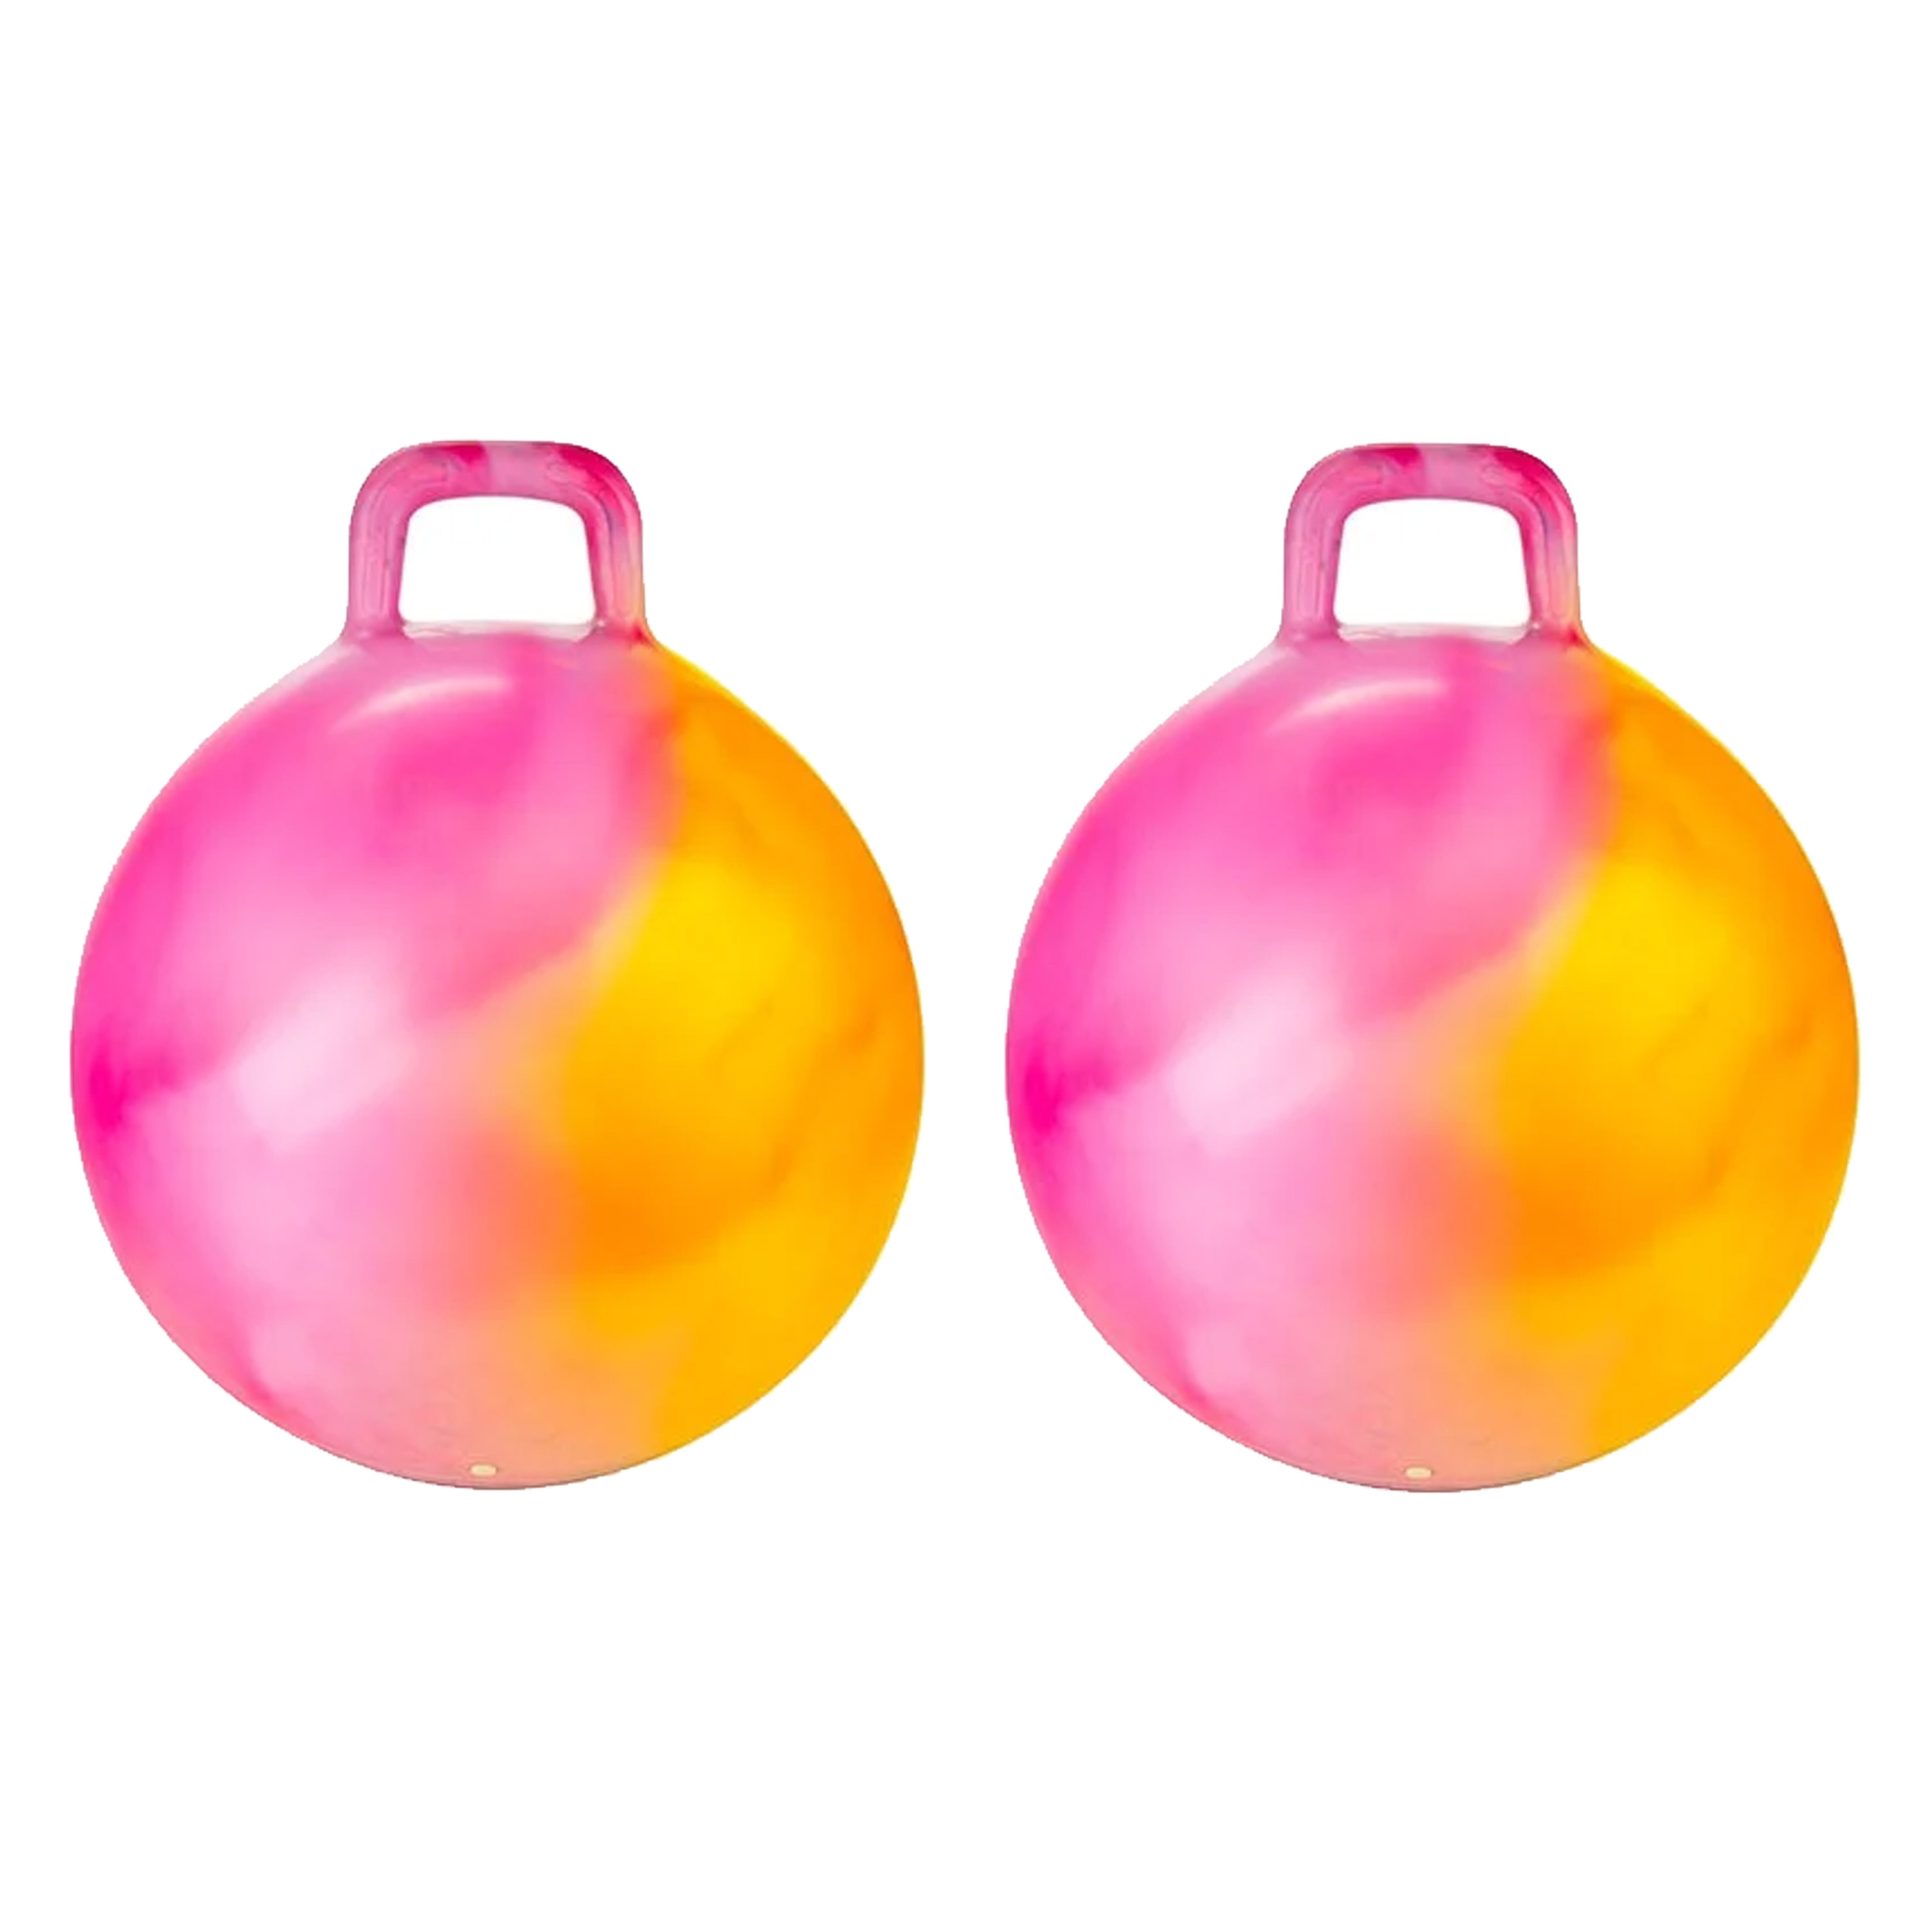 Skippybal marble - 2x - oranje/roze - D45 cm - buitenspeelgoed voor kinderen -